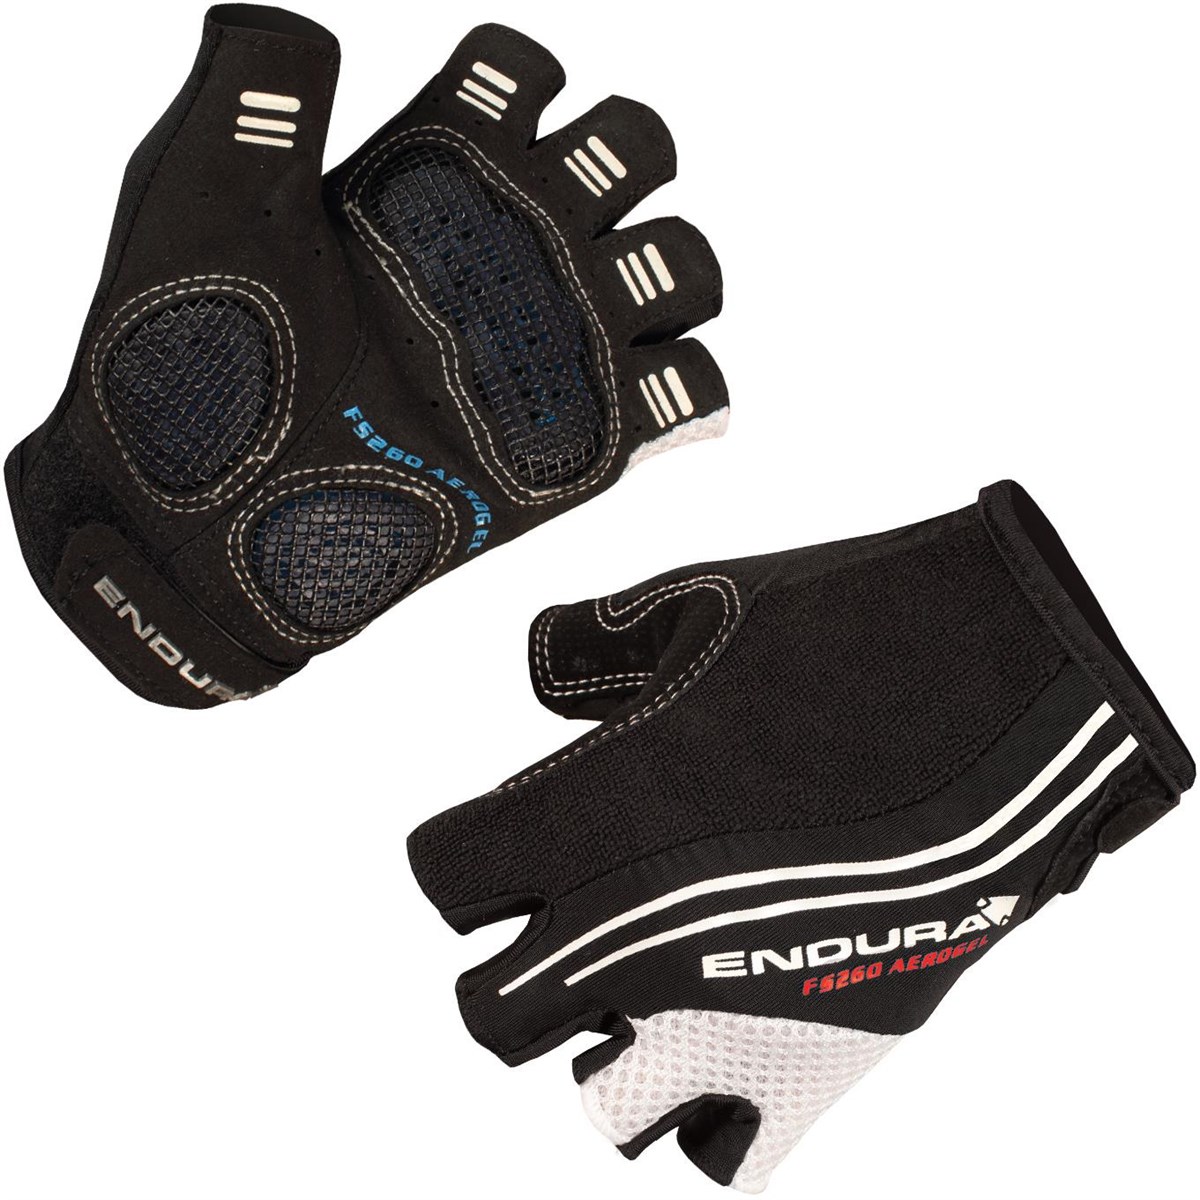 Endura FS260 Aerogel Mitt Short Fingered Cycling Gloves SS16